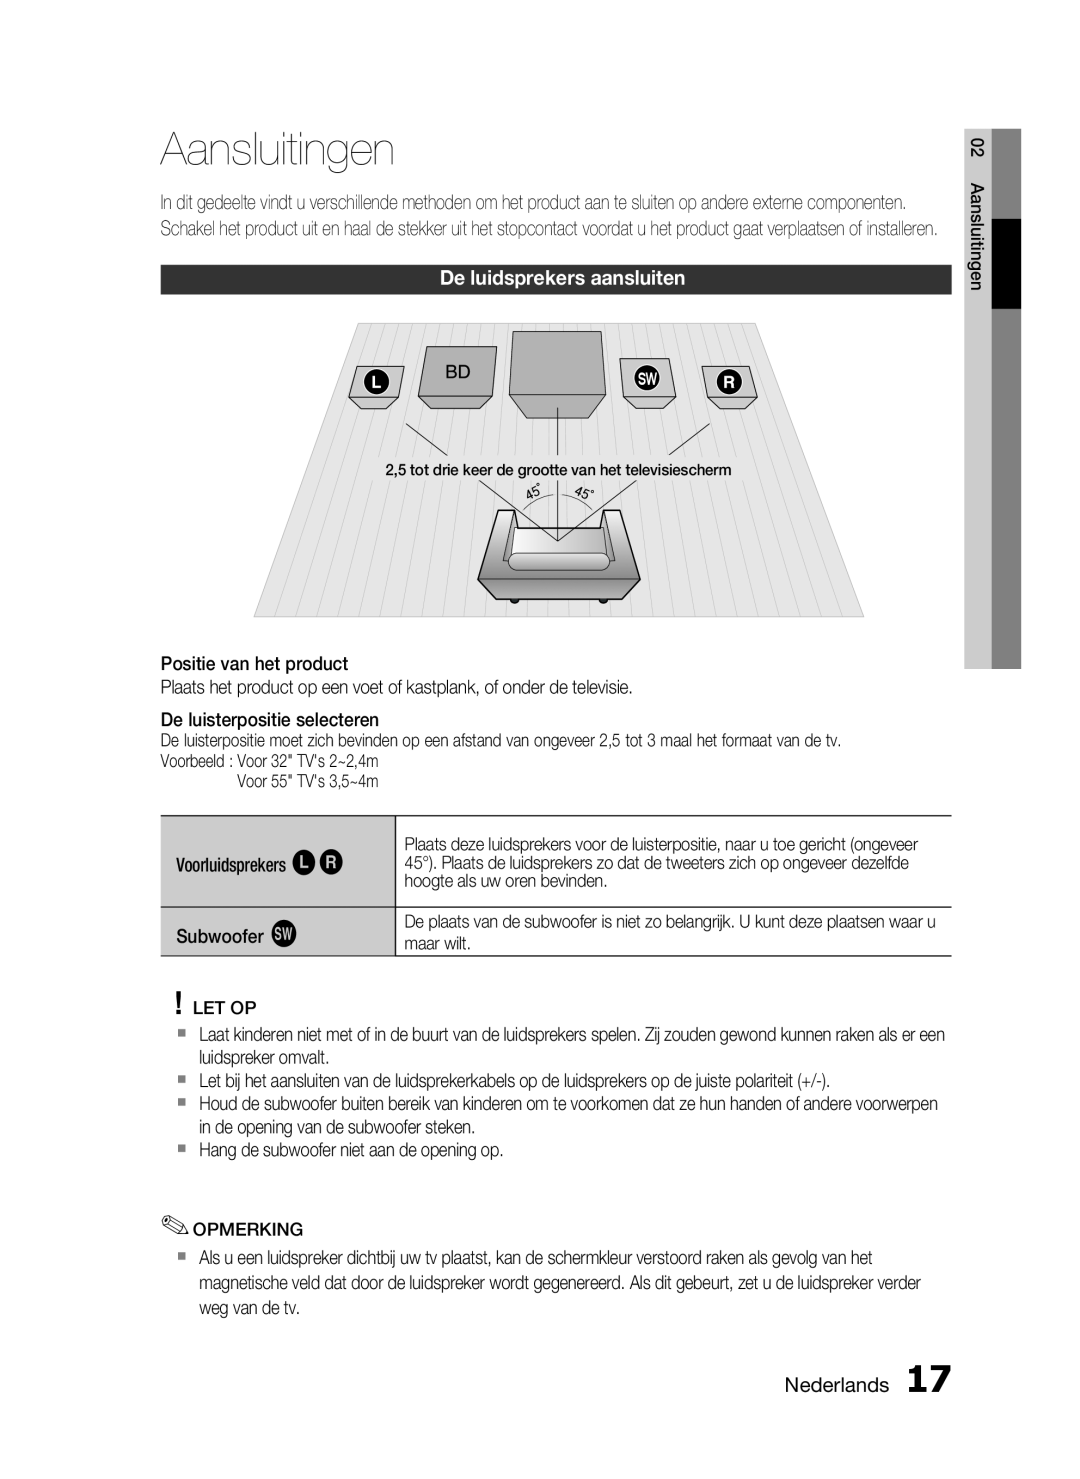 Samsung HT-C6200/XEF manual Aansluitingen, De luidsprekers aansluiten, Nederlands 